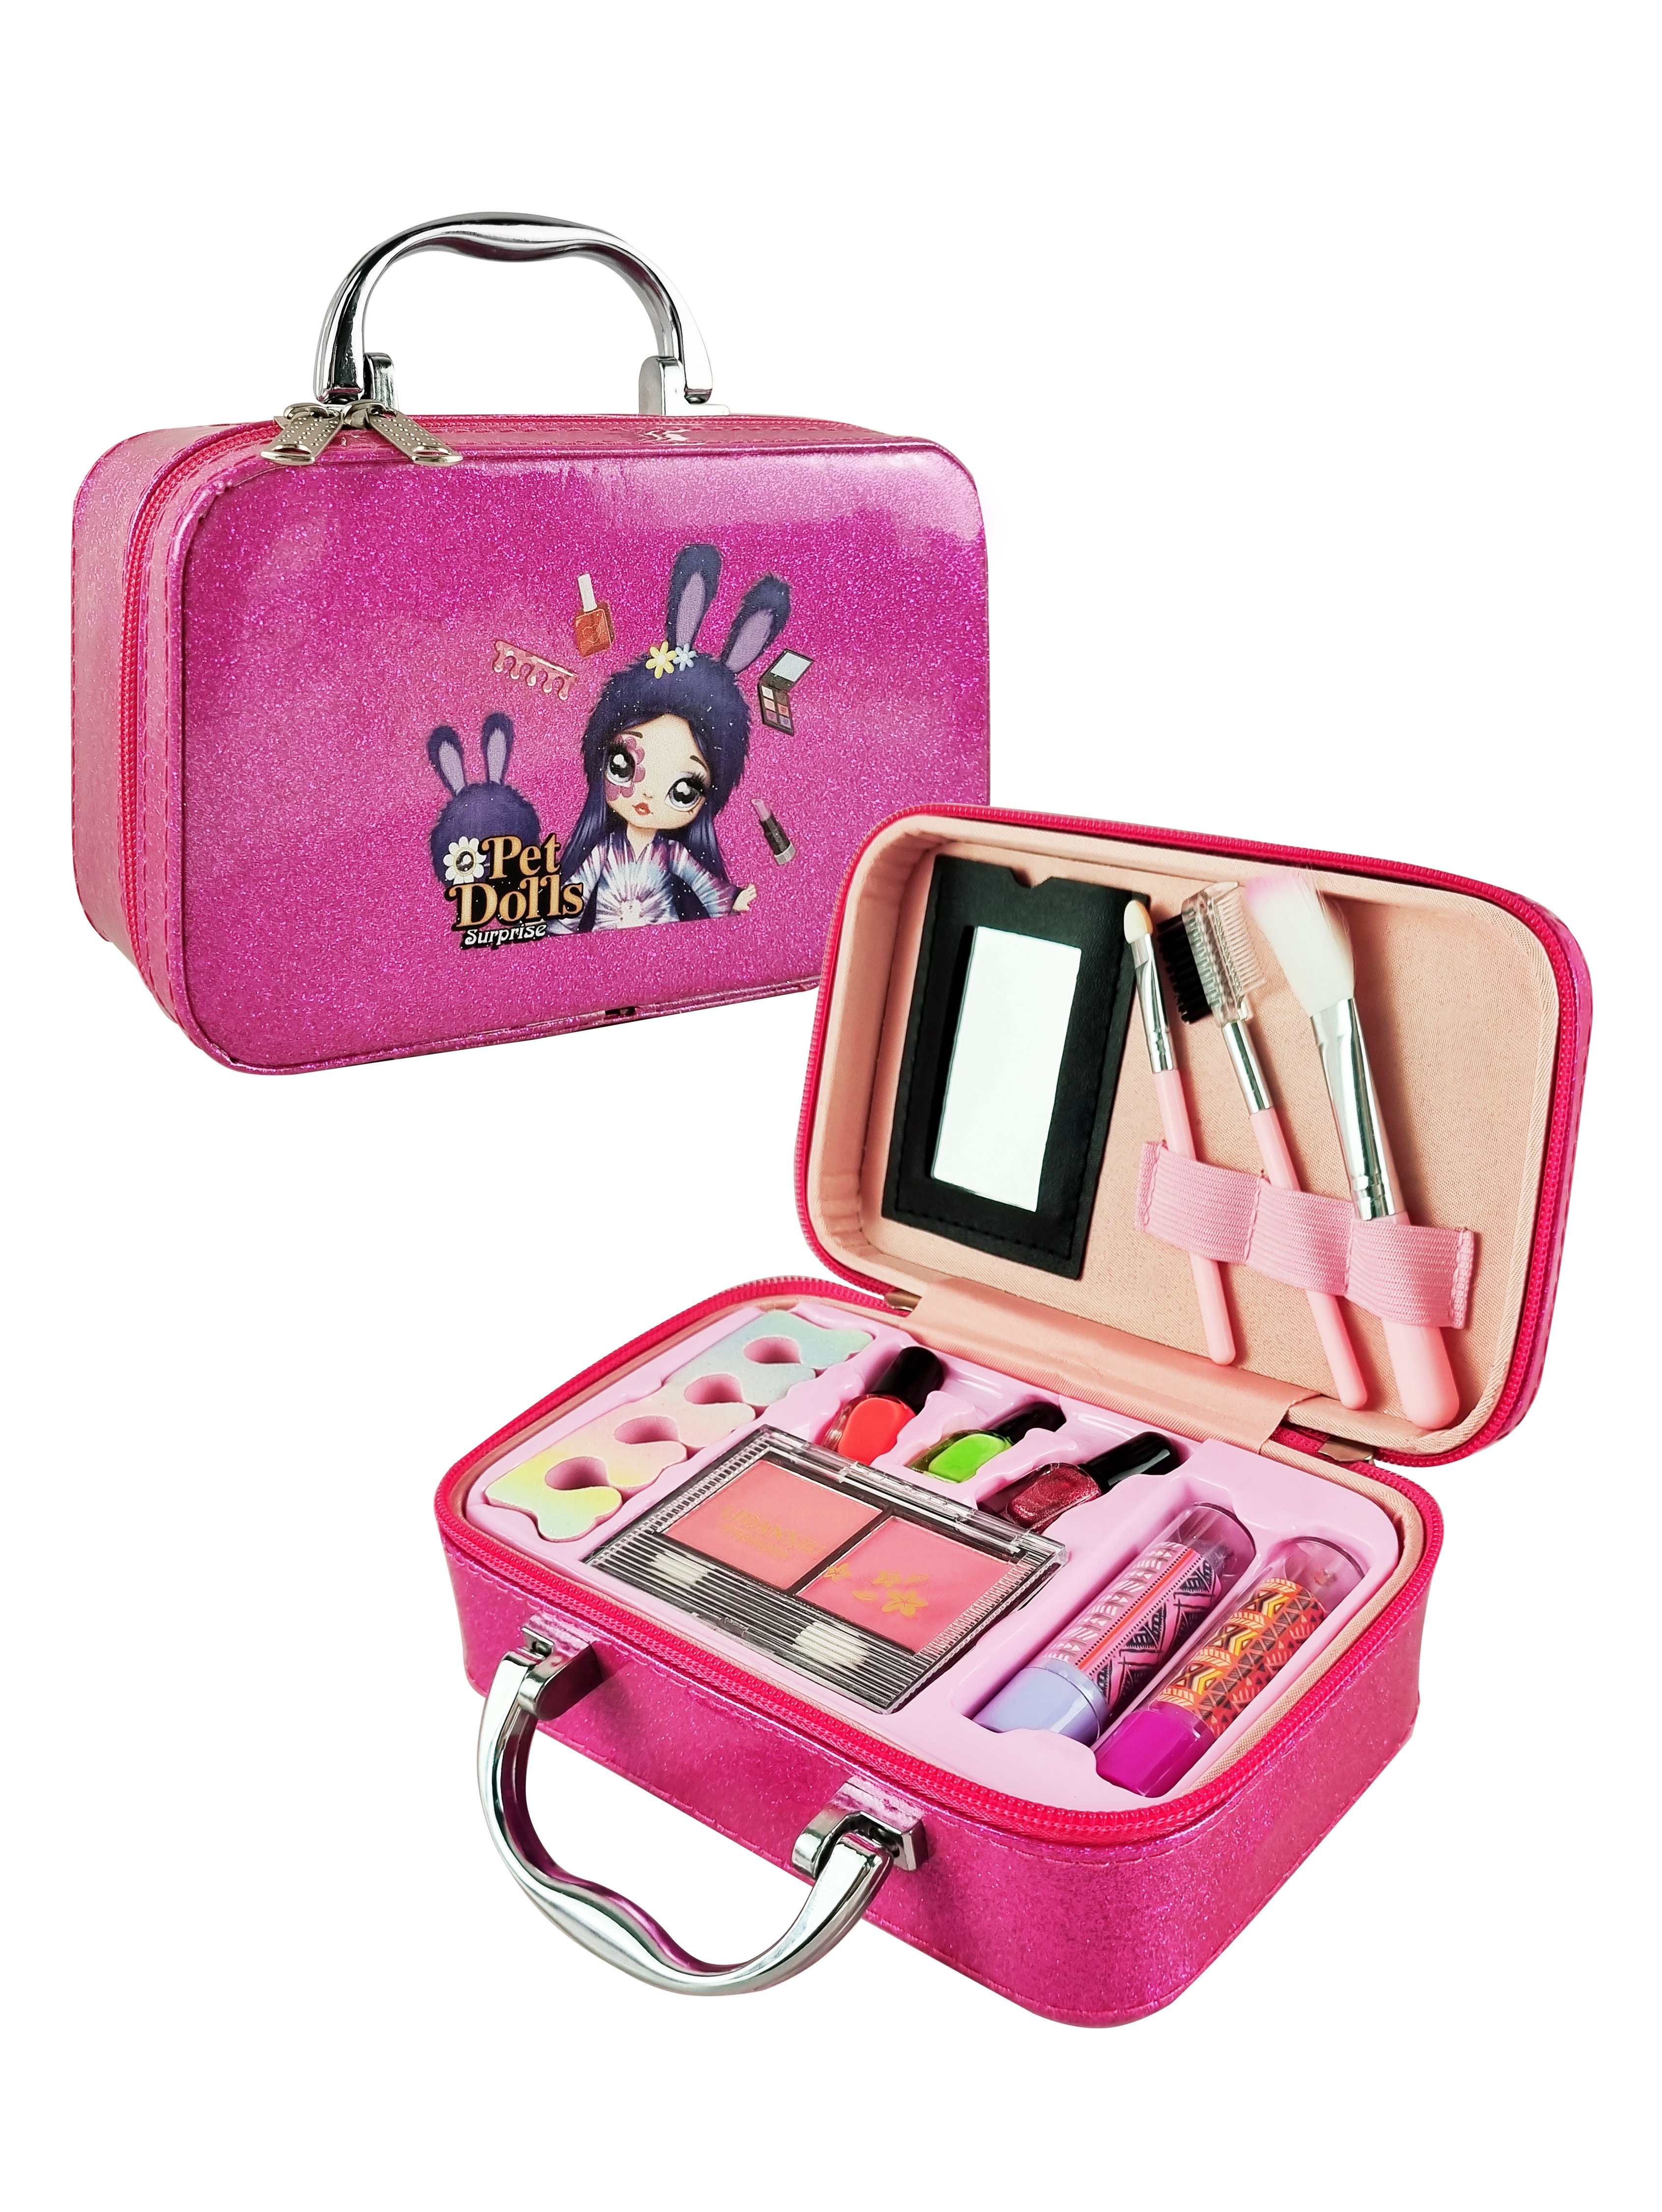 Детская декоративная косметика PetDolls, 12 предметов, пурпурный чемоданчик 5-905-1 прекрасная косметика из дешевых аптечных средств